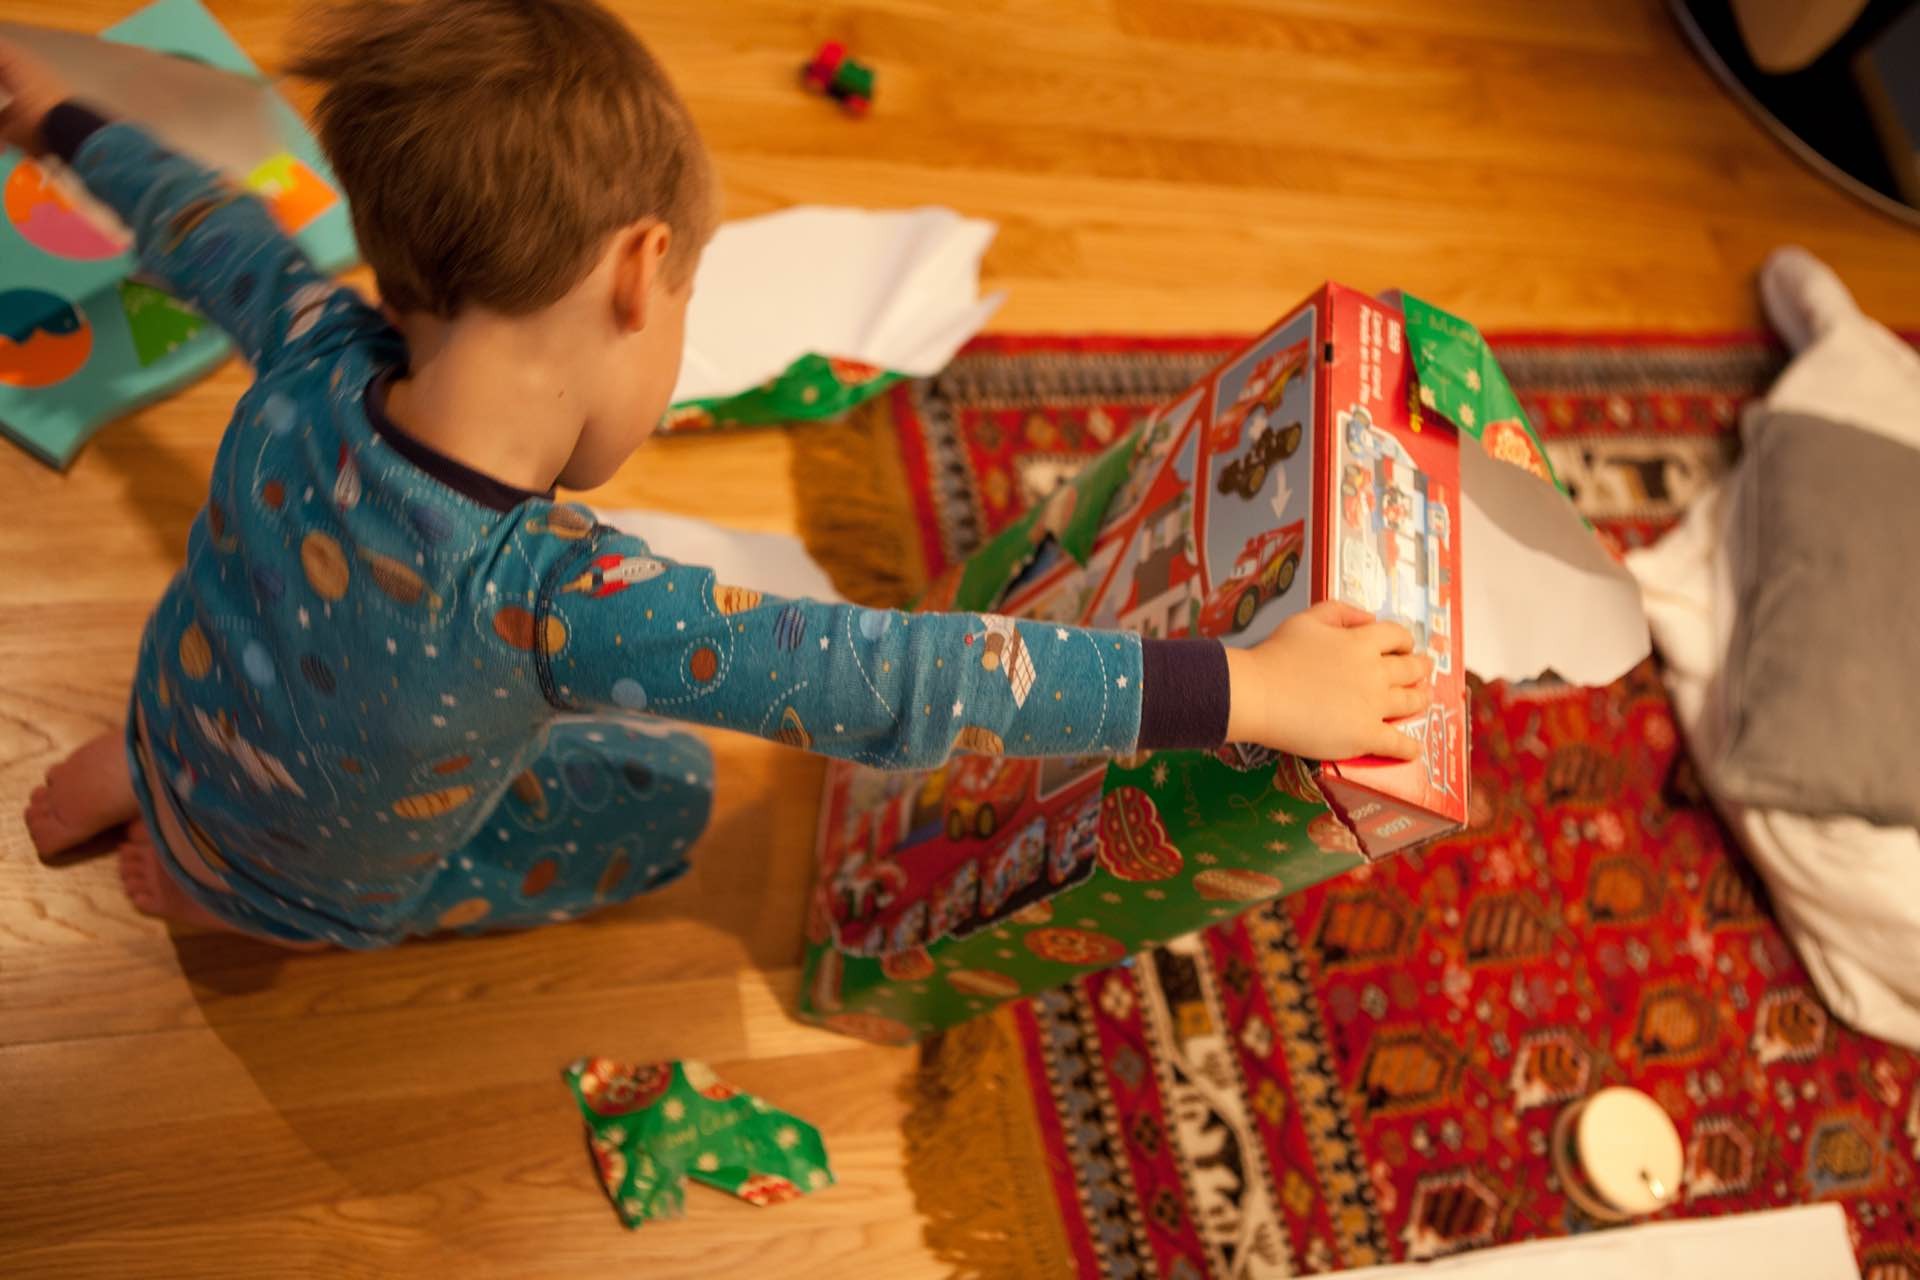 great-toys-gifts-for-kids-2015-hero-lars-plougmann